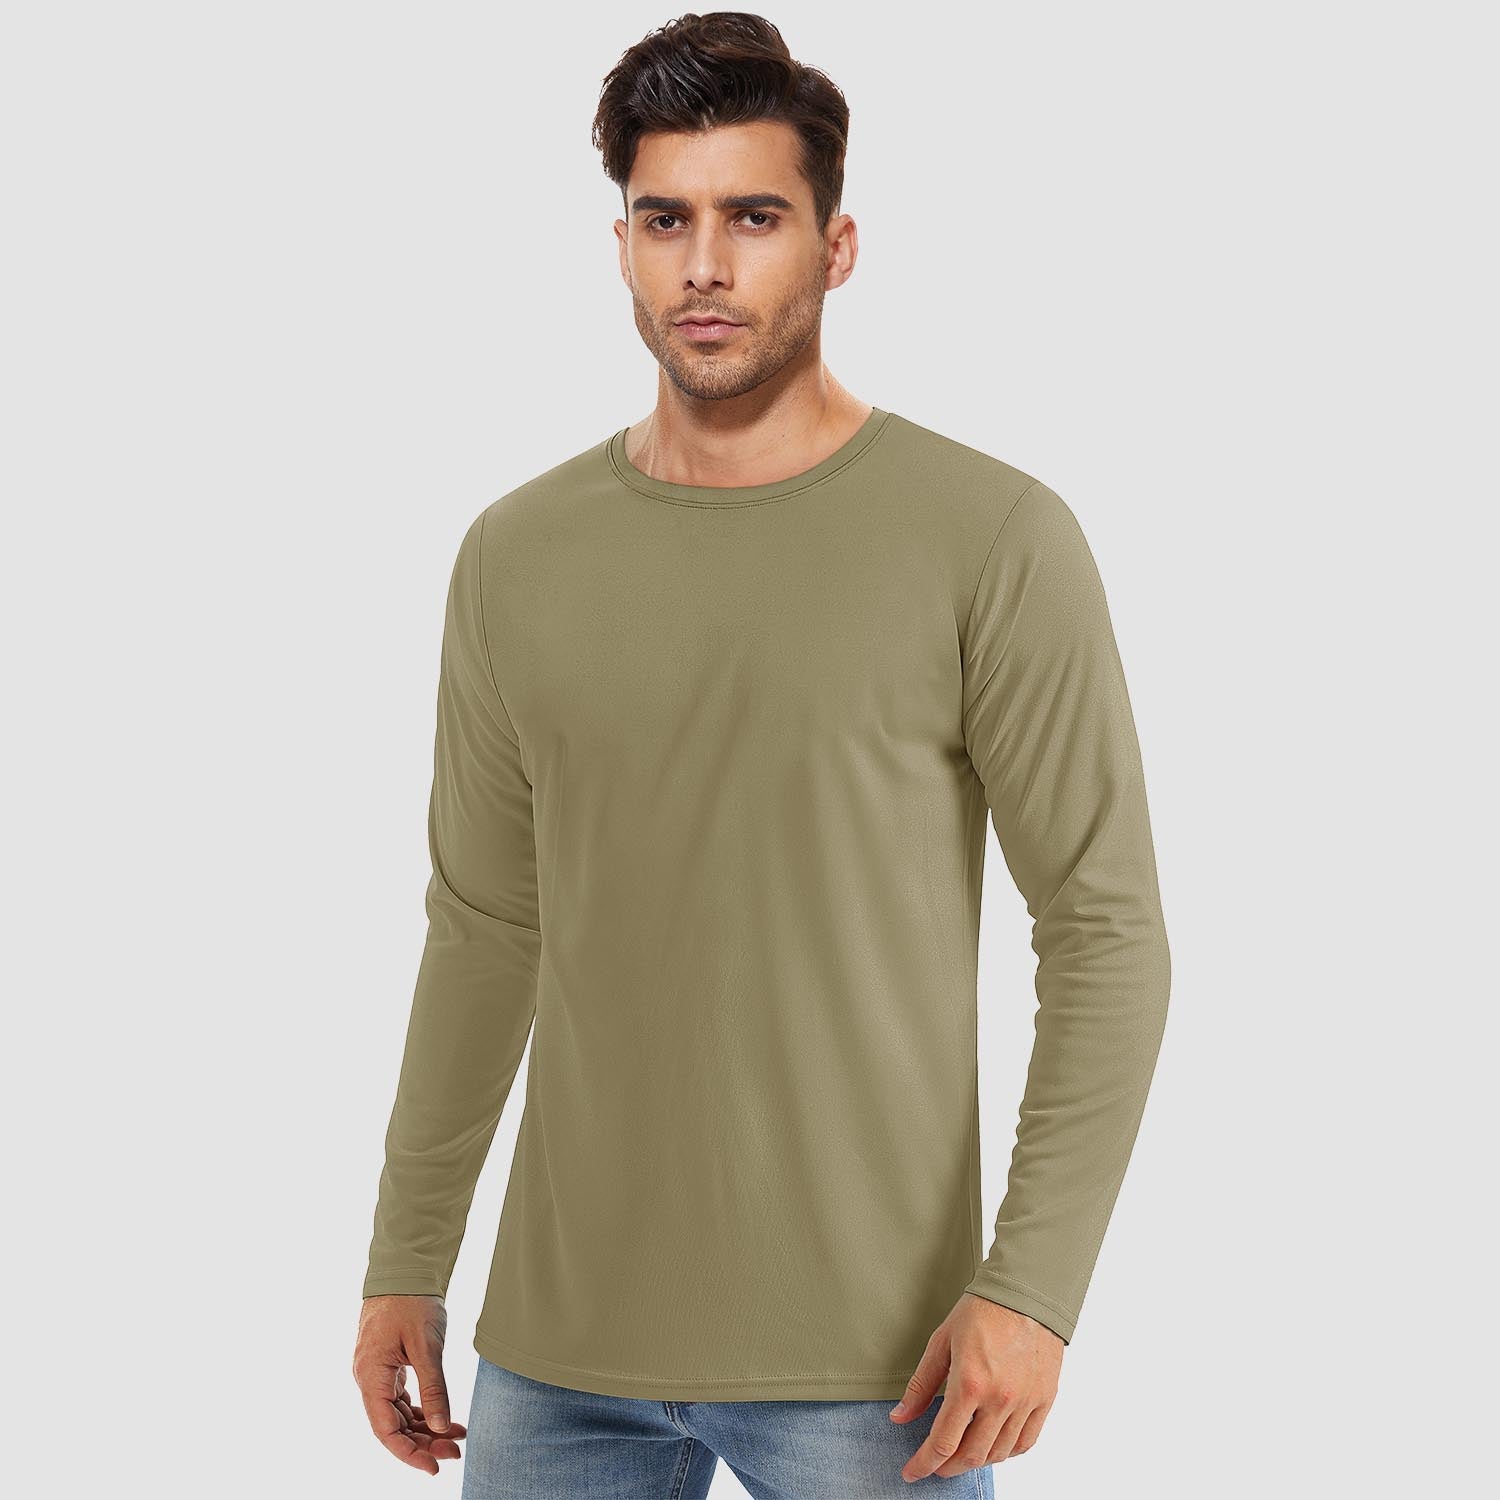 Men's UPF 80+ Long Sleeve Shirts UV Sun Protection Shirt Running Fishi –  MAGCOMSEN